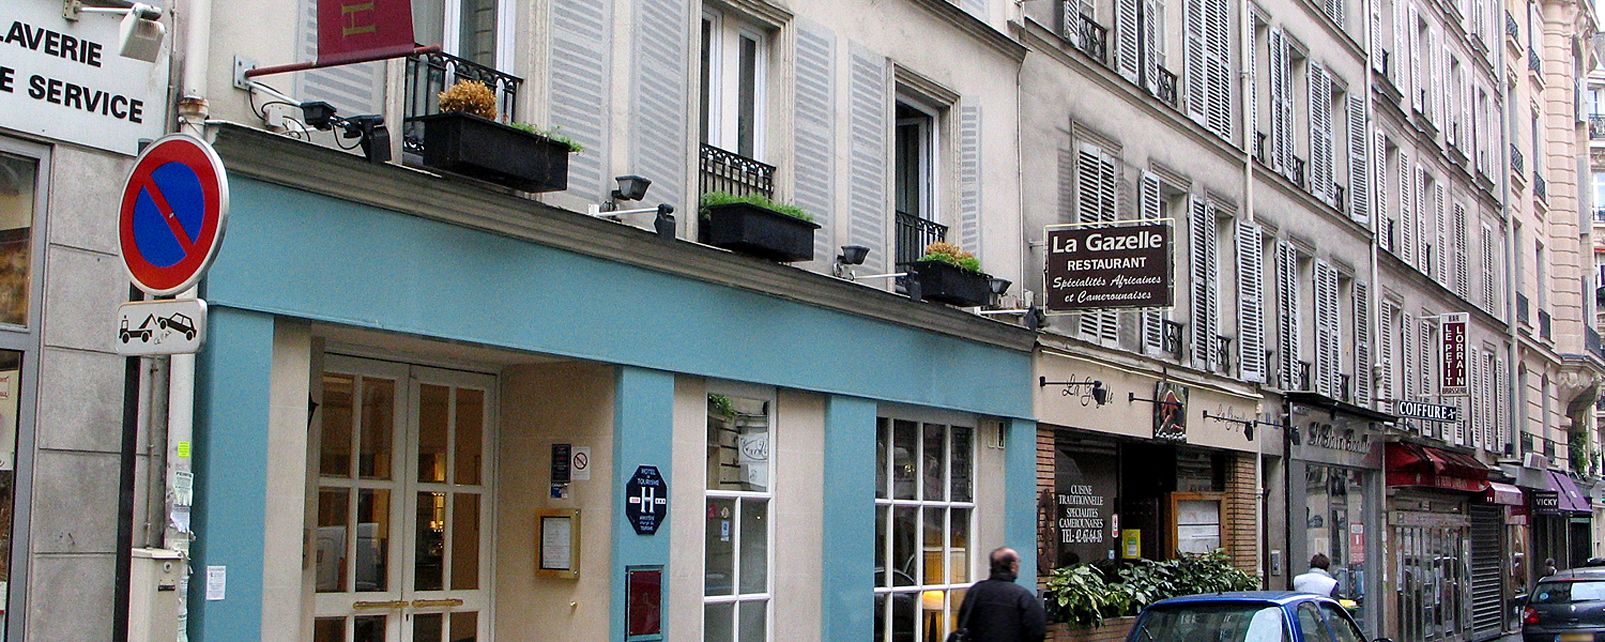 Hotel Monceau Wagram Hotel Paris